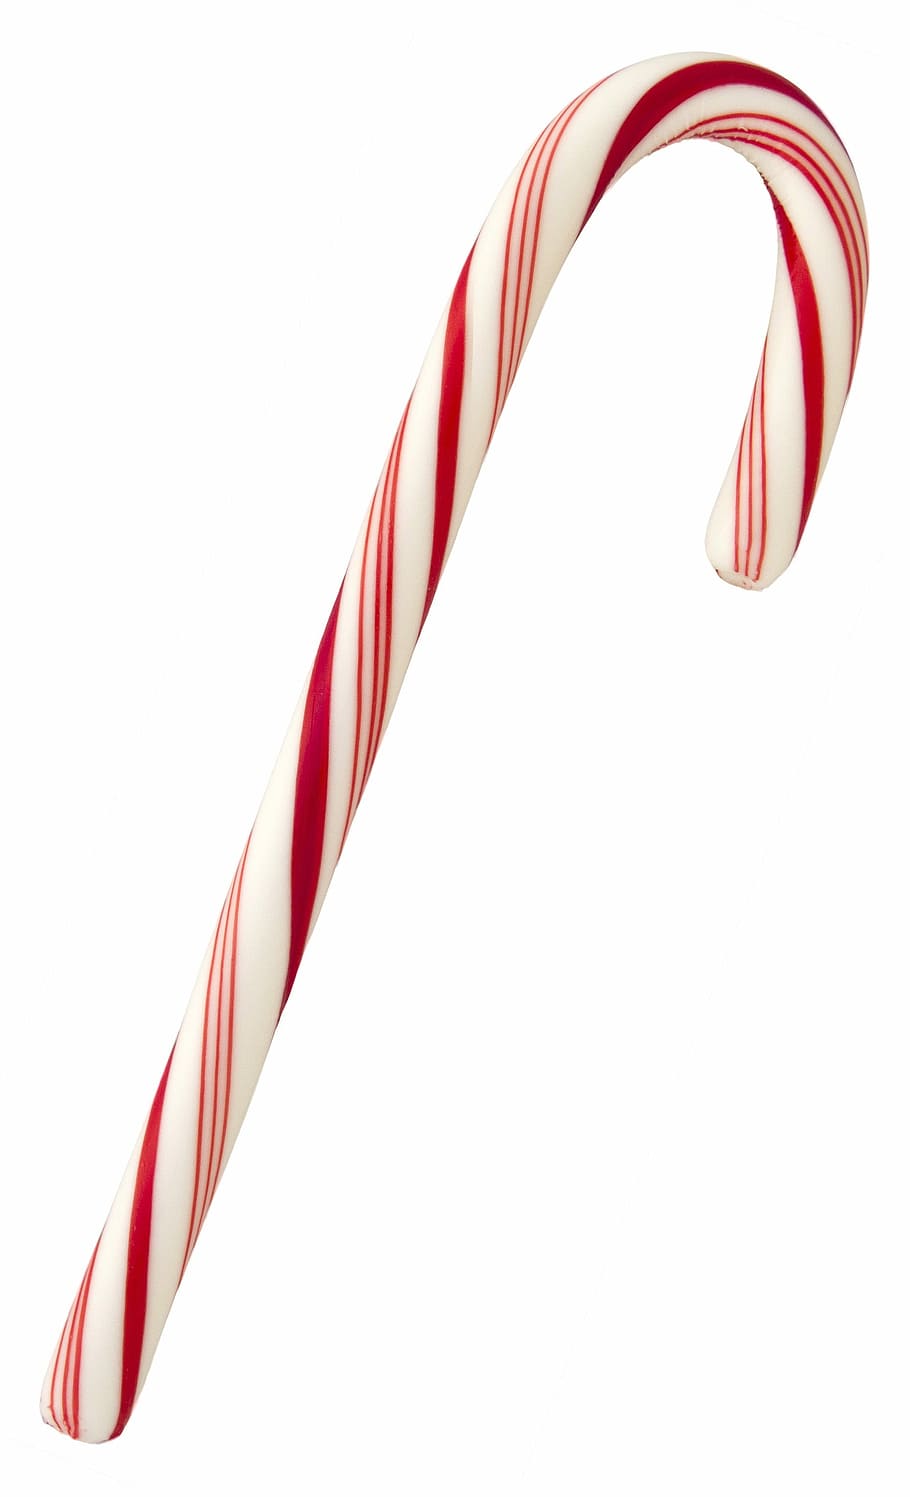 tradisional, tongkat permen natal, Natal, Candy Canes, dekorasi, foto, liburan, domain publik, merah dan putih, candy Cane